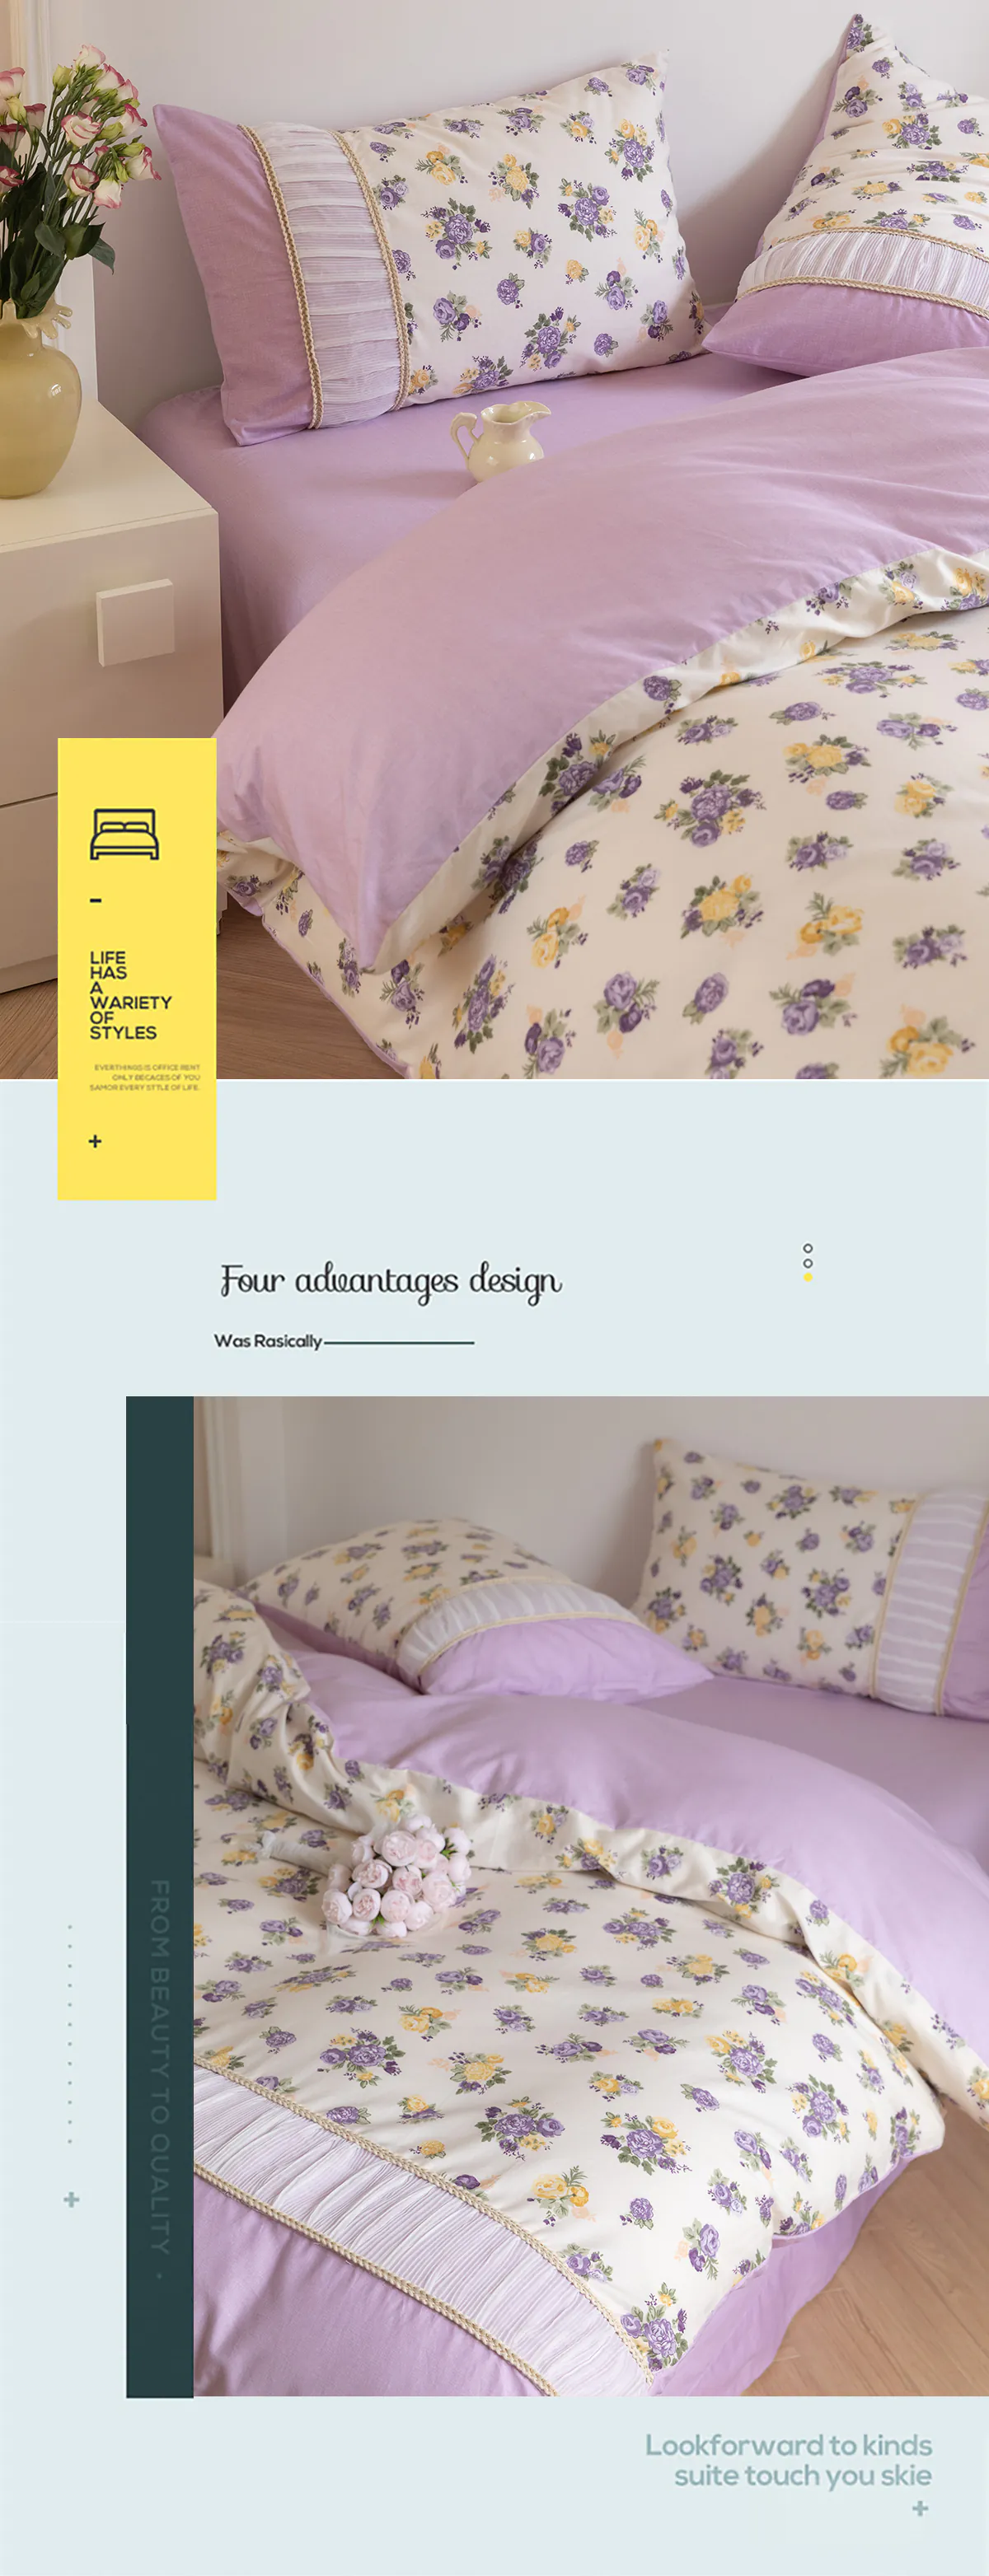 Retro-Princess-Style-100-Cotton-Floral-Duvet-Cover-Bedding-Set27